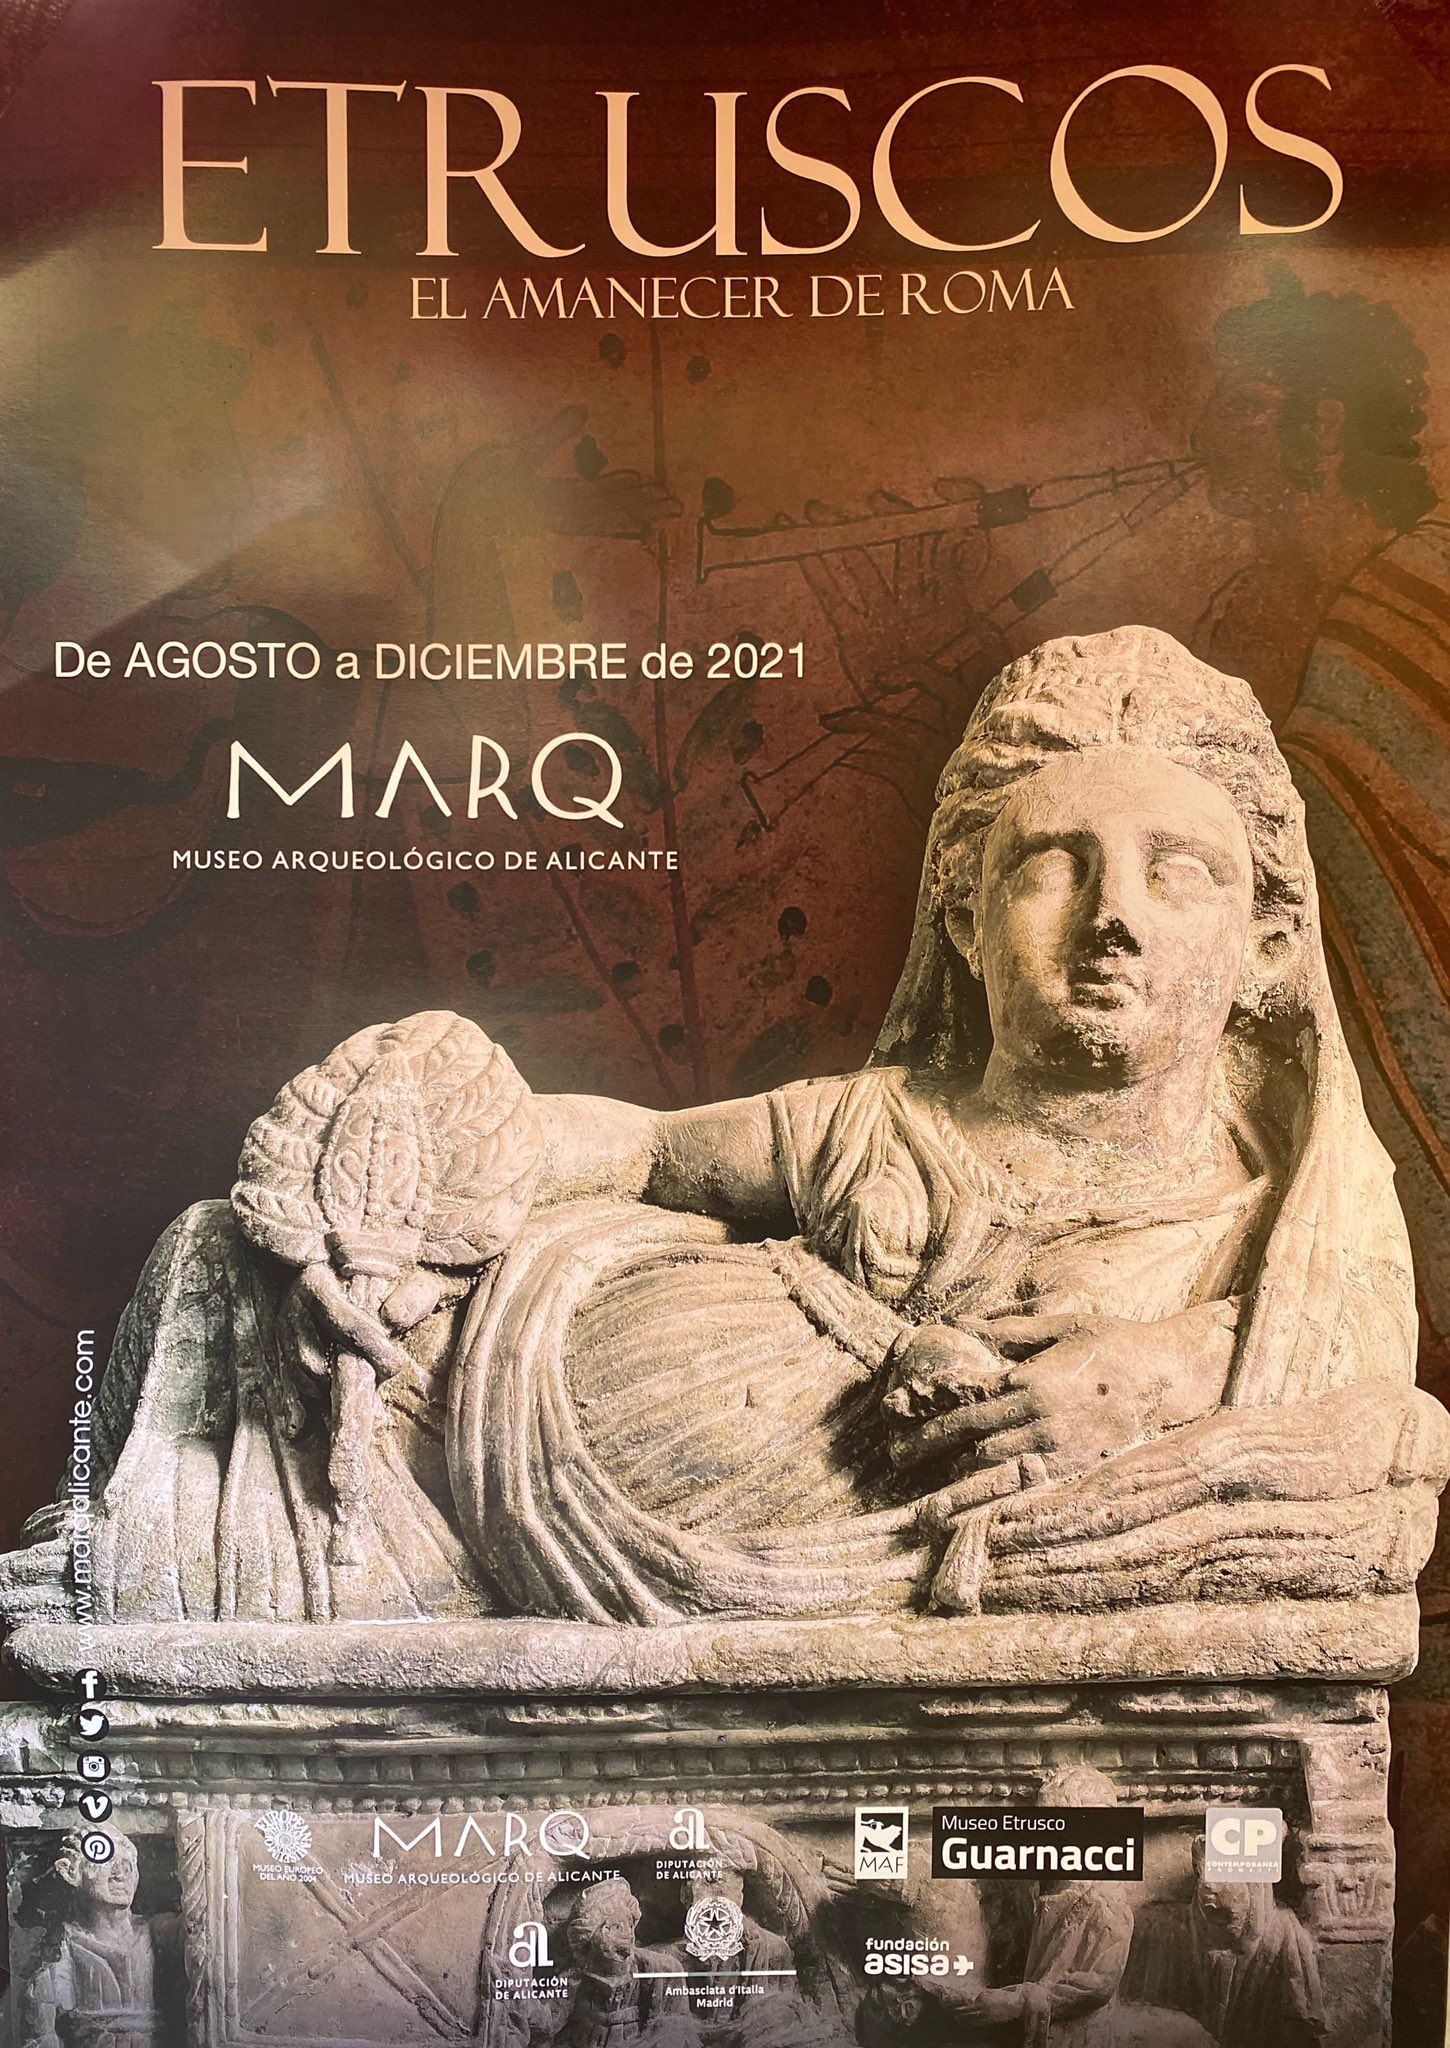 La exposición 'Etruscos' mostrará por primera vez un "panorama global" de esta civilización